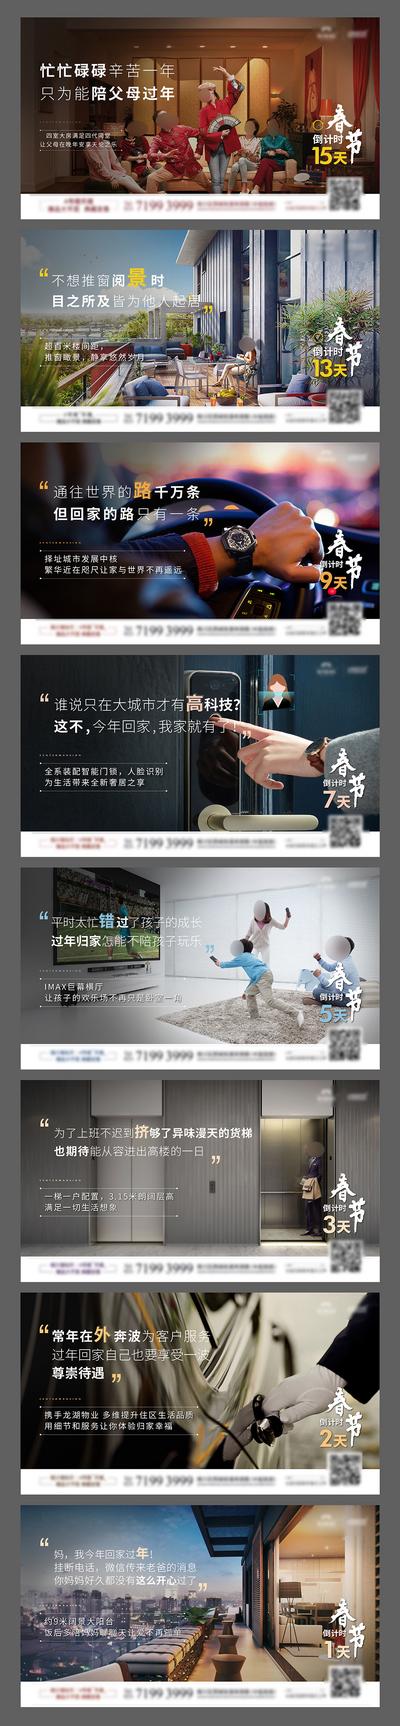 南门网 海报 房地产 春节 中国传统节日 倒计时 系列 返乡置业